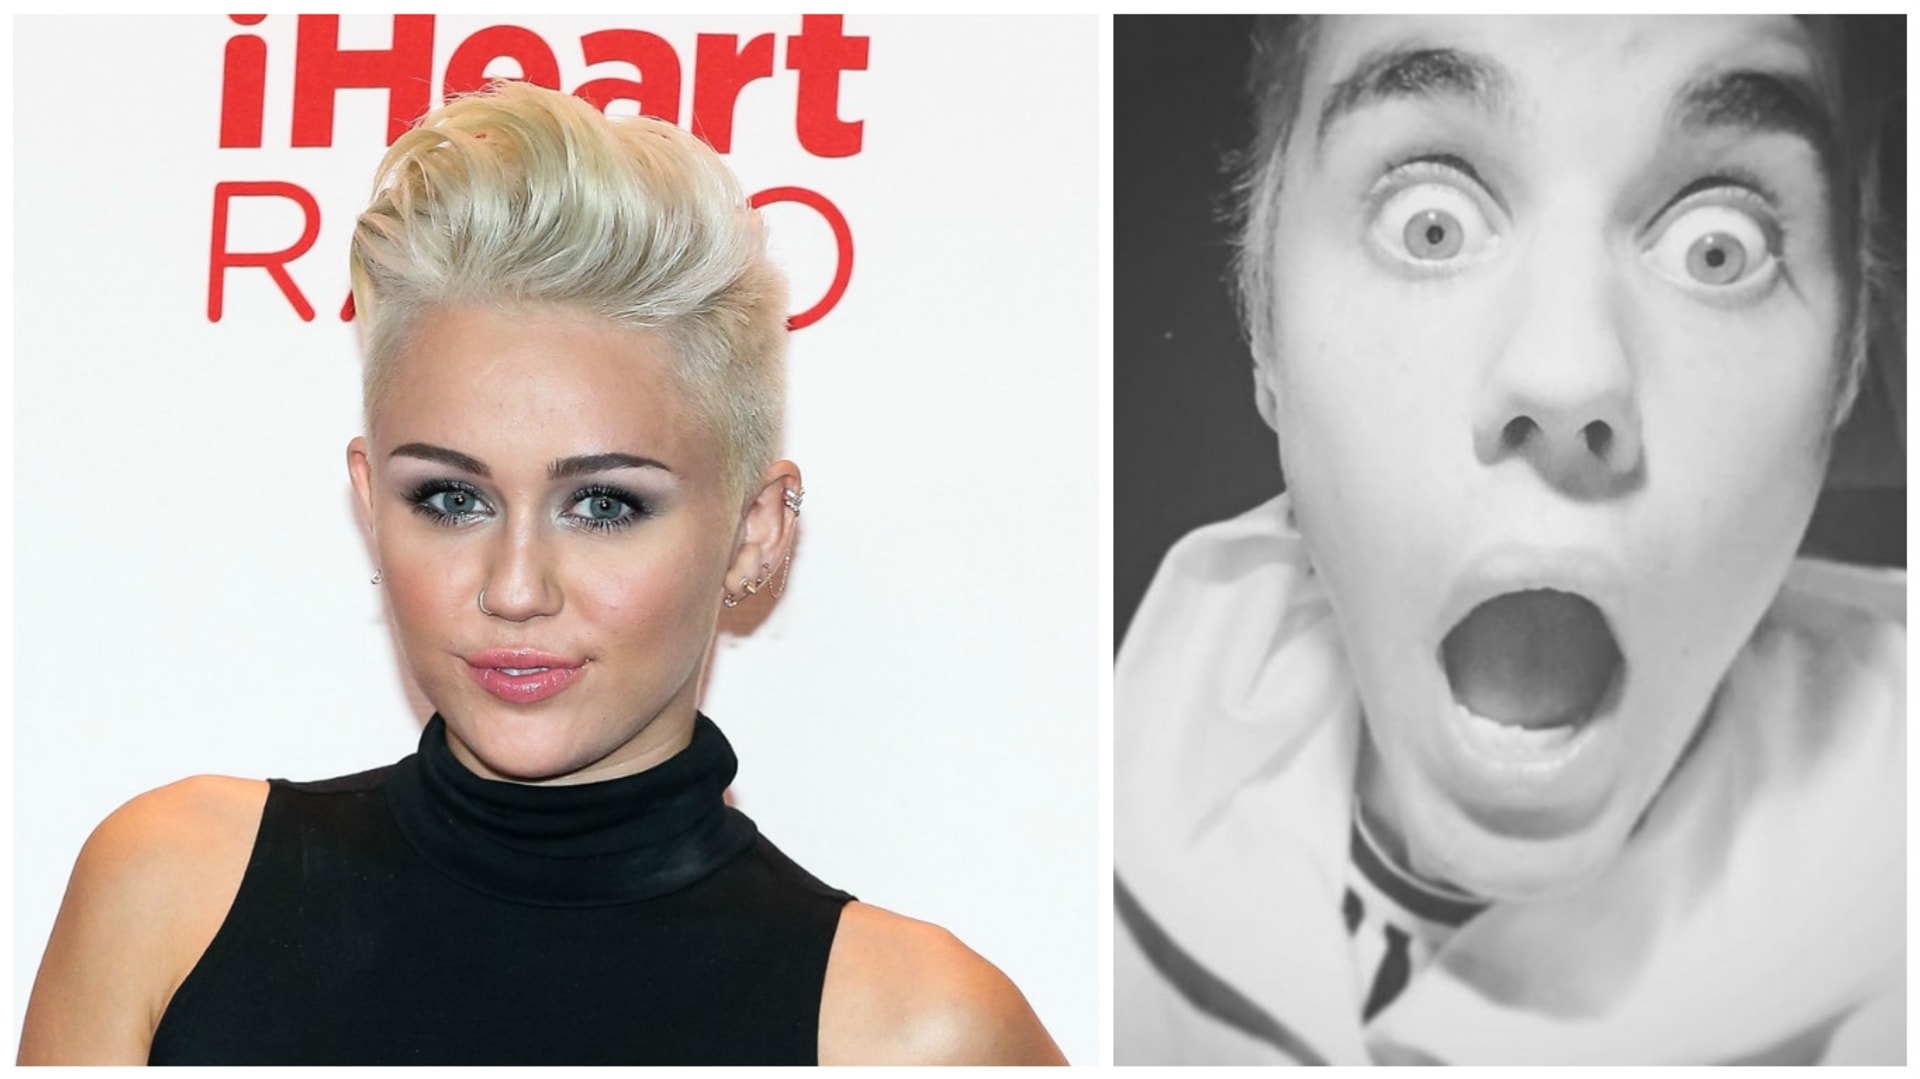 Nemá Miley náhodou pravdu?